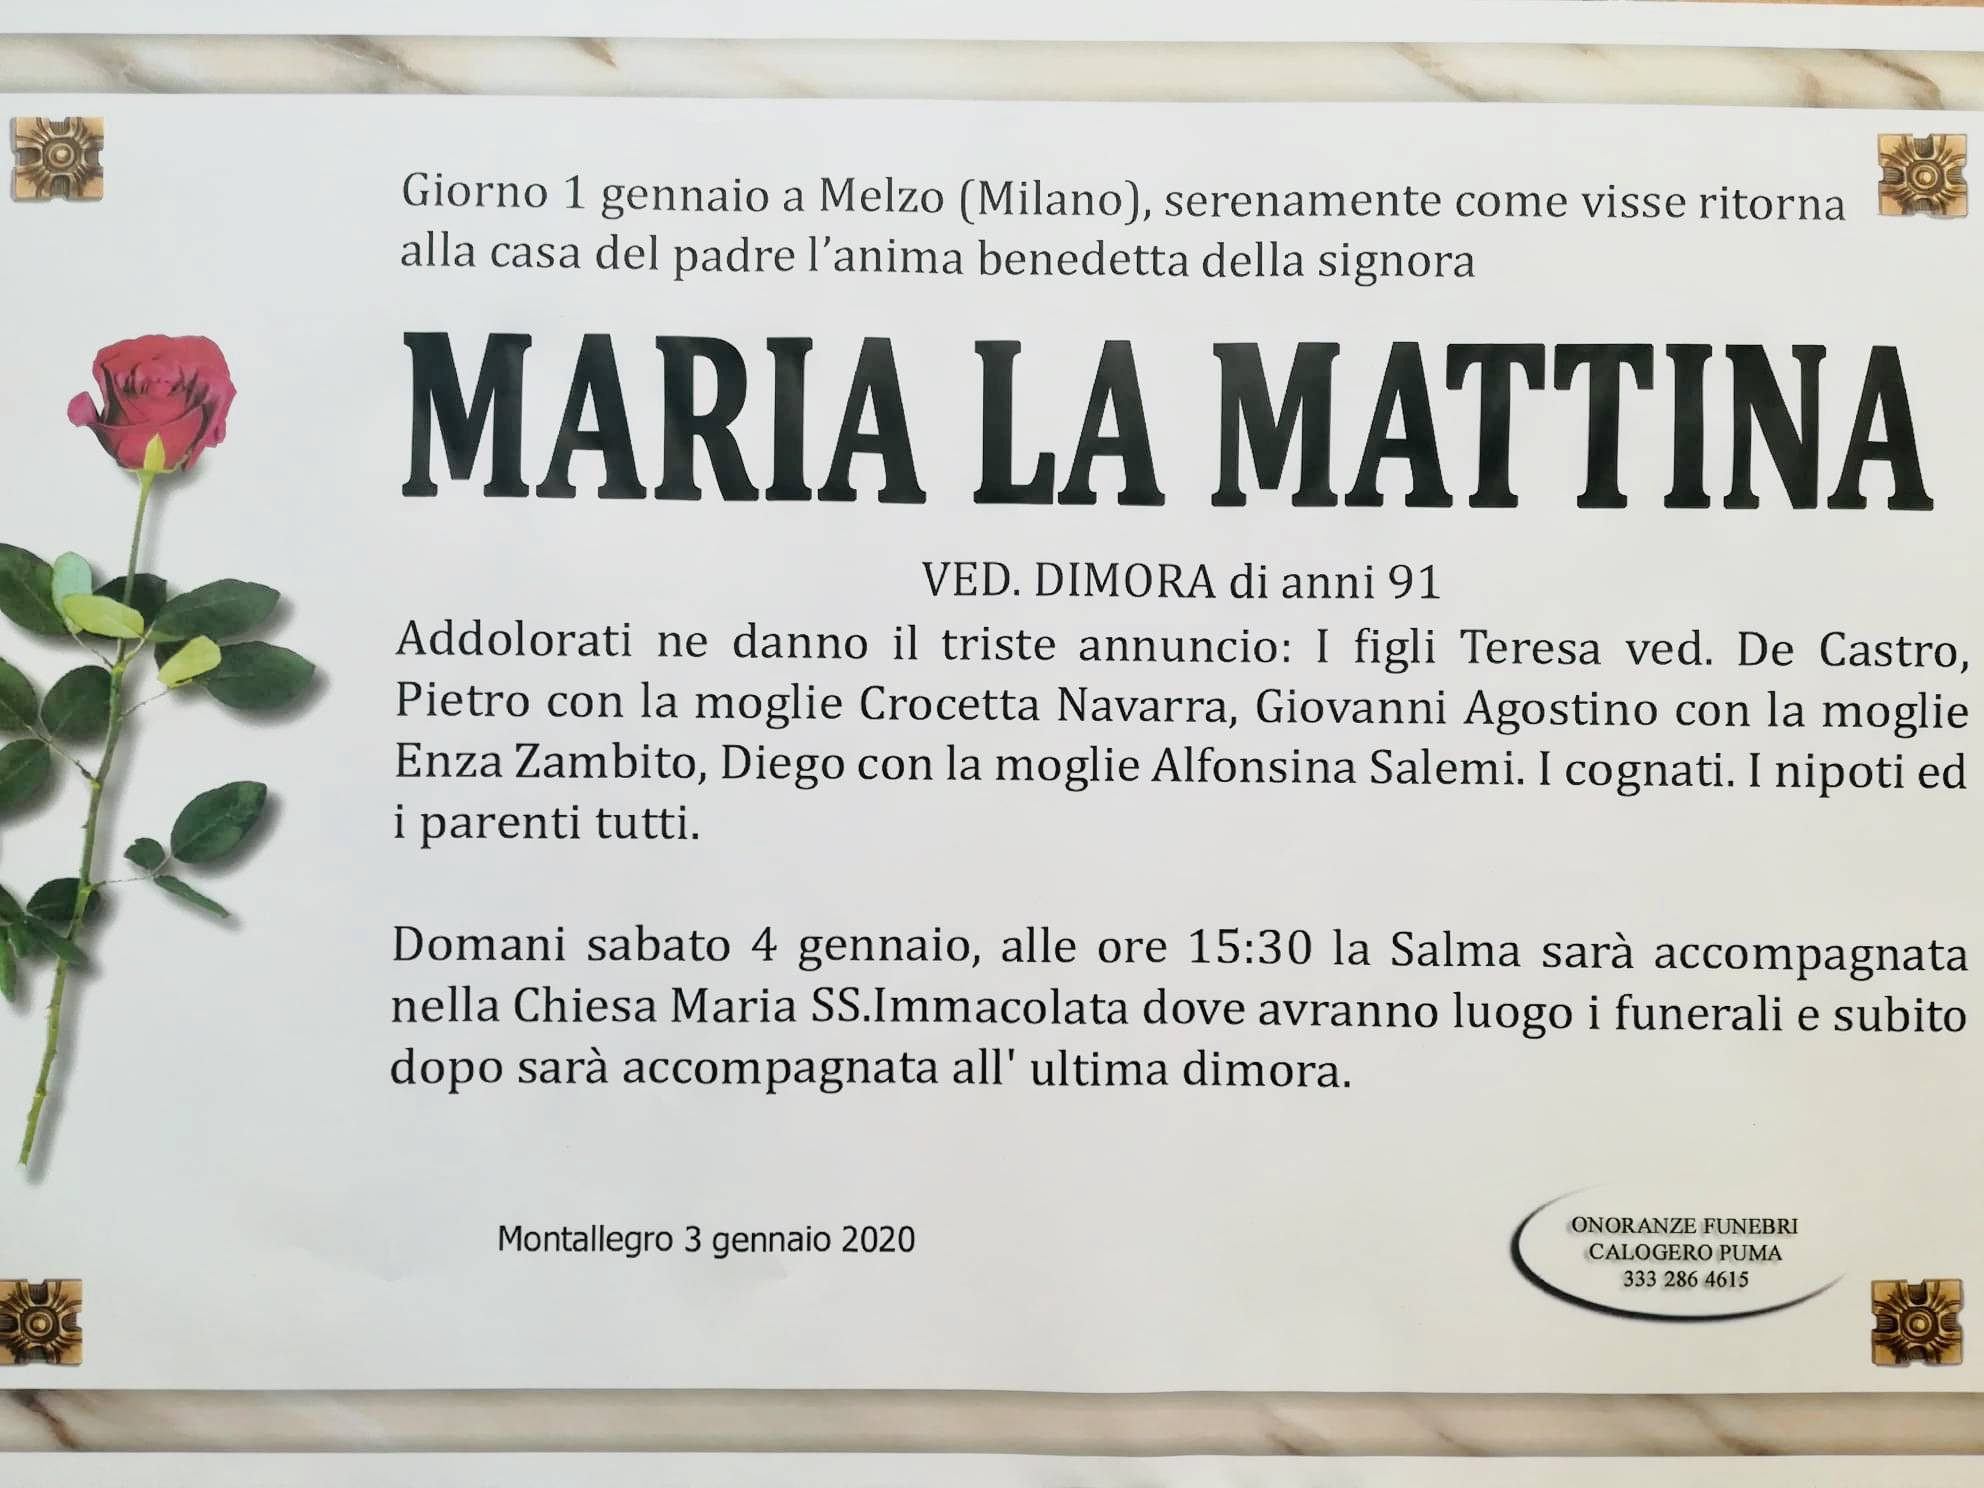 La Mattina Maria